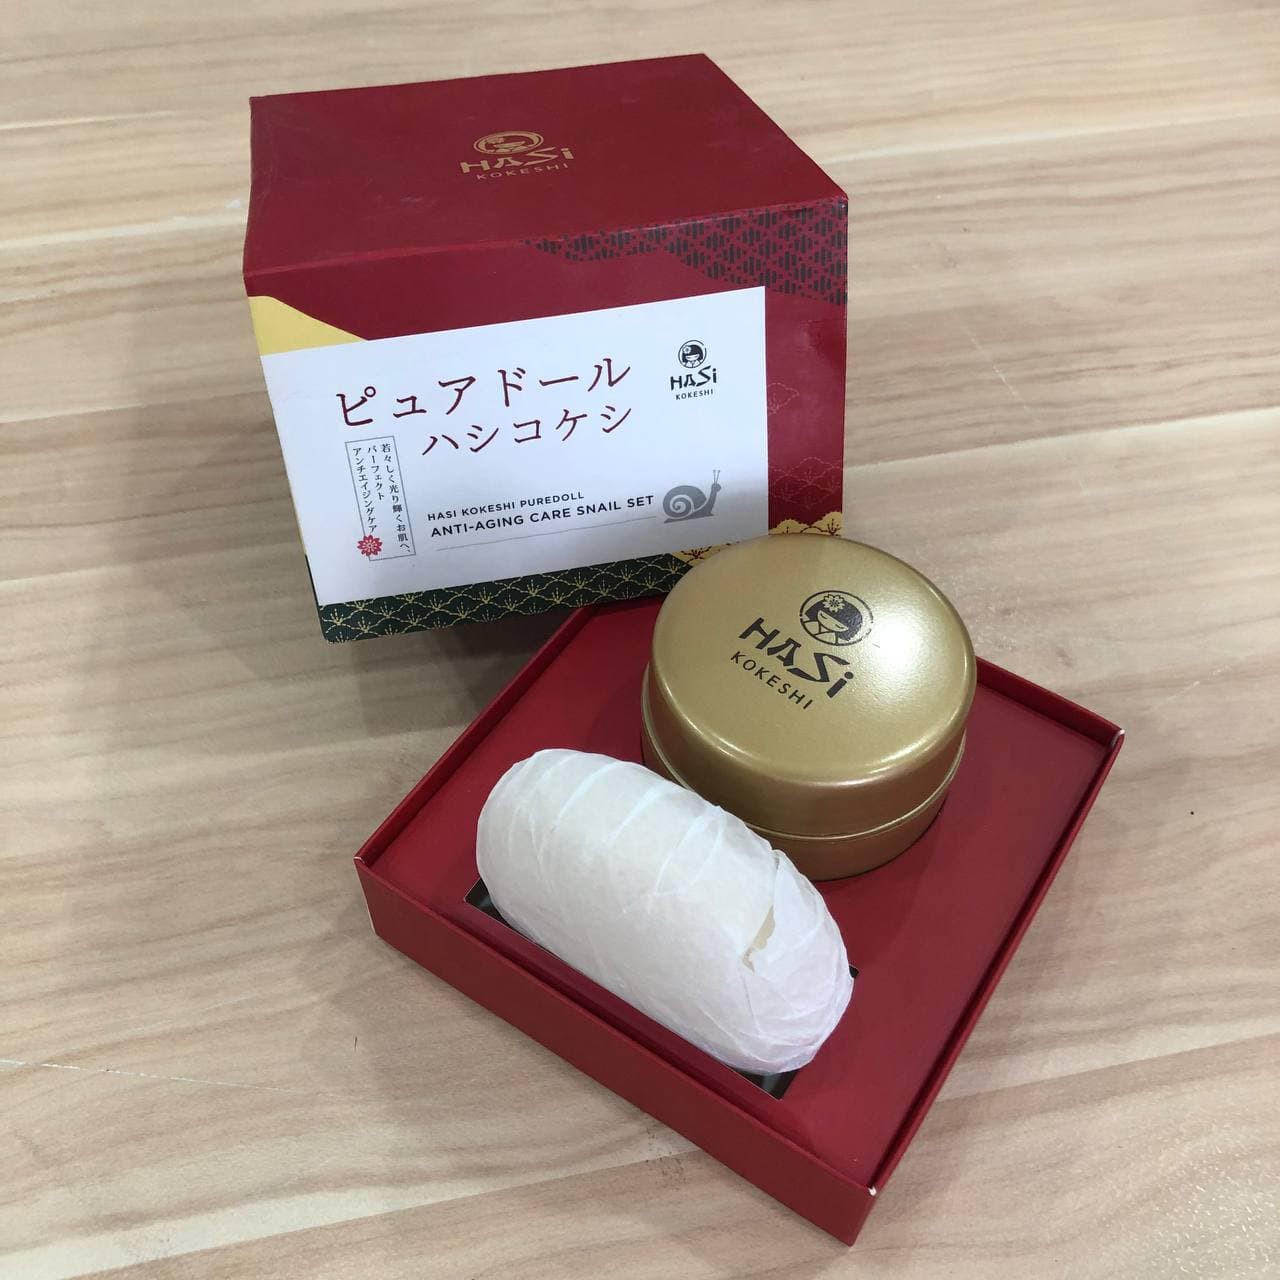 Set chống lão hóa chiết xuất ốc sên HaSi Kokeshi ANTI-AGING CARE SNAIL SET